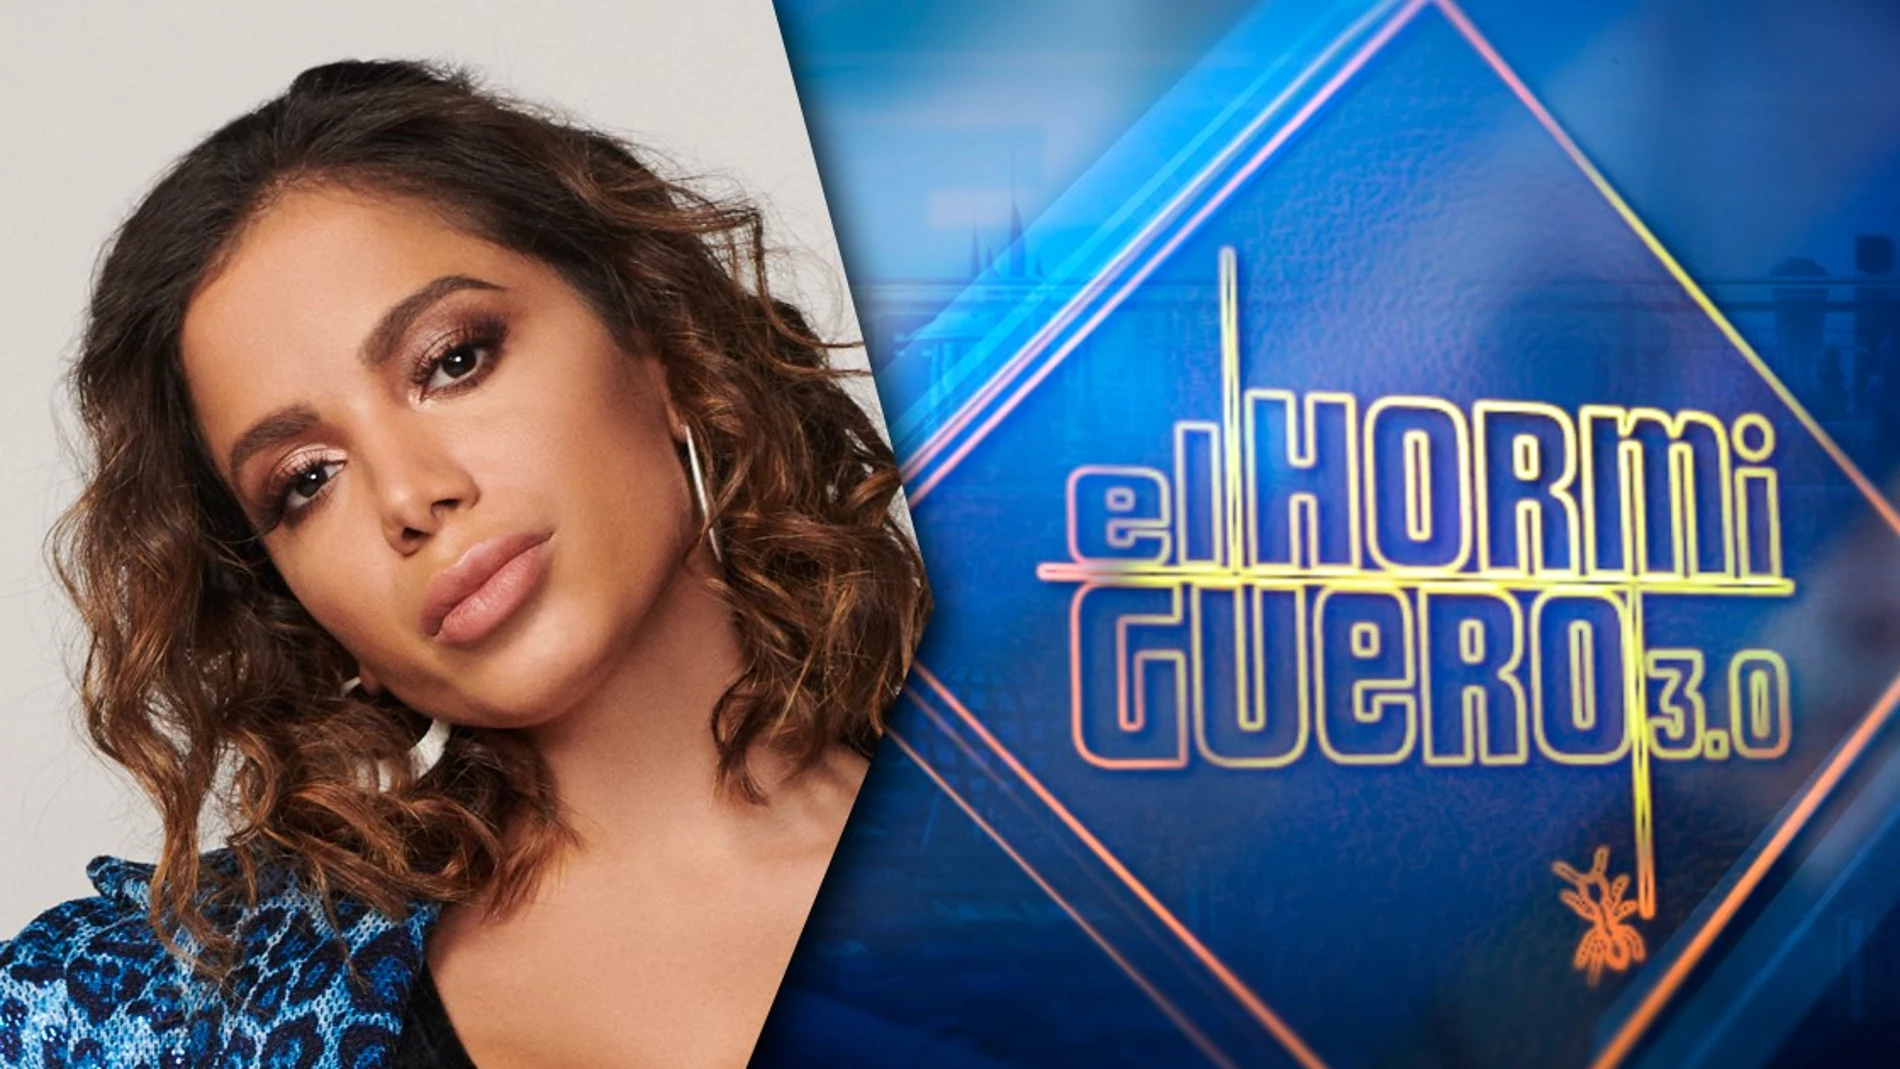 La cantante Anitta pone música a 'El Hormiguero 3.0'